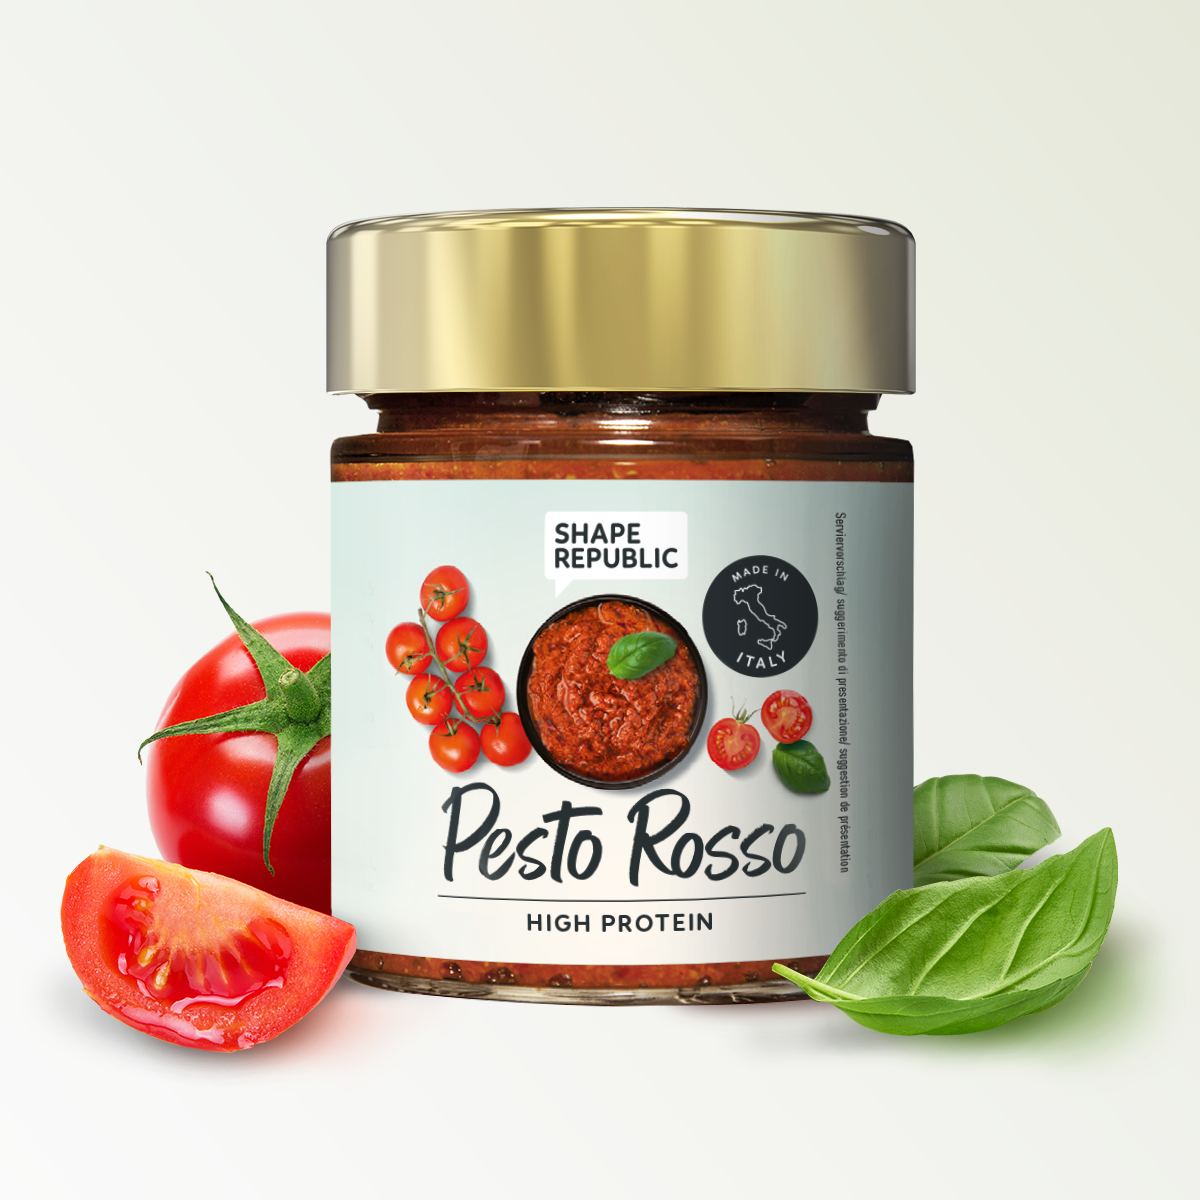 High Protein Pesto 130g | Pesto Rosso | Shape Republic